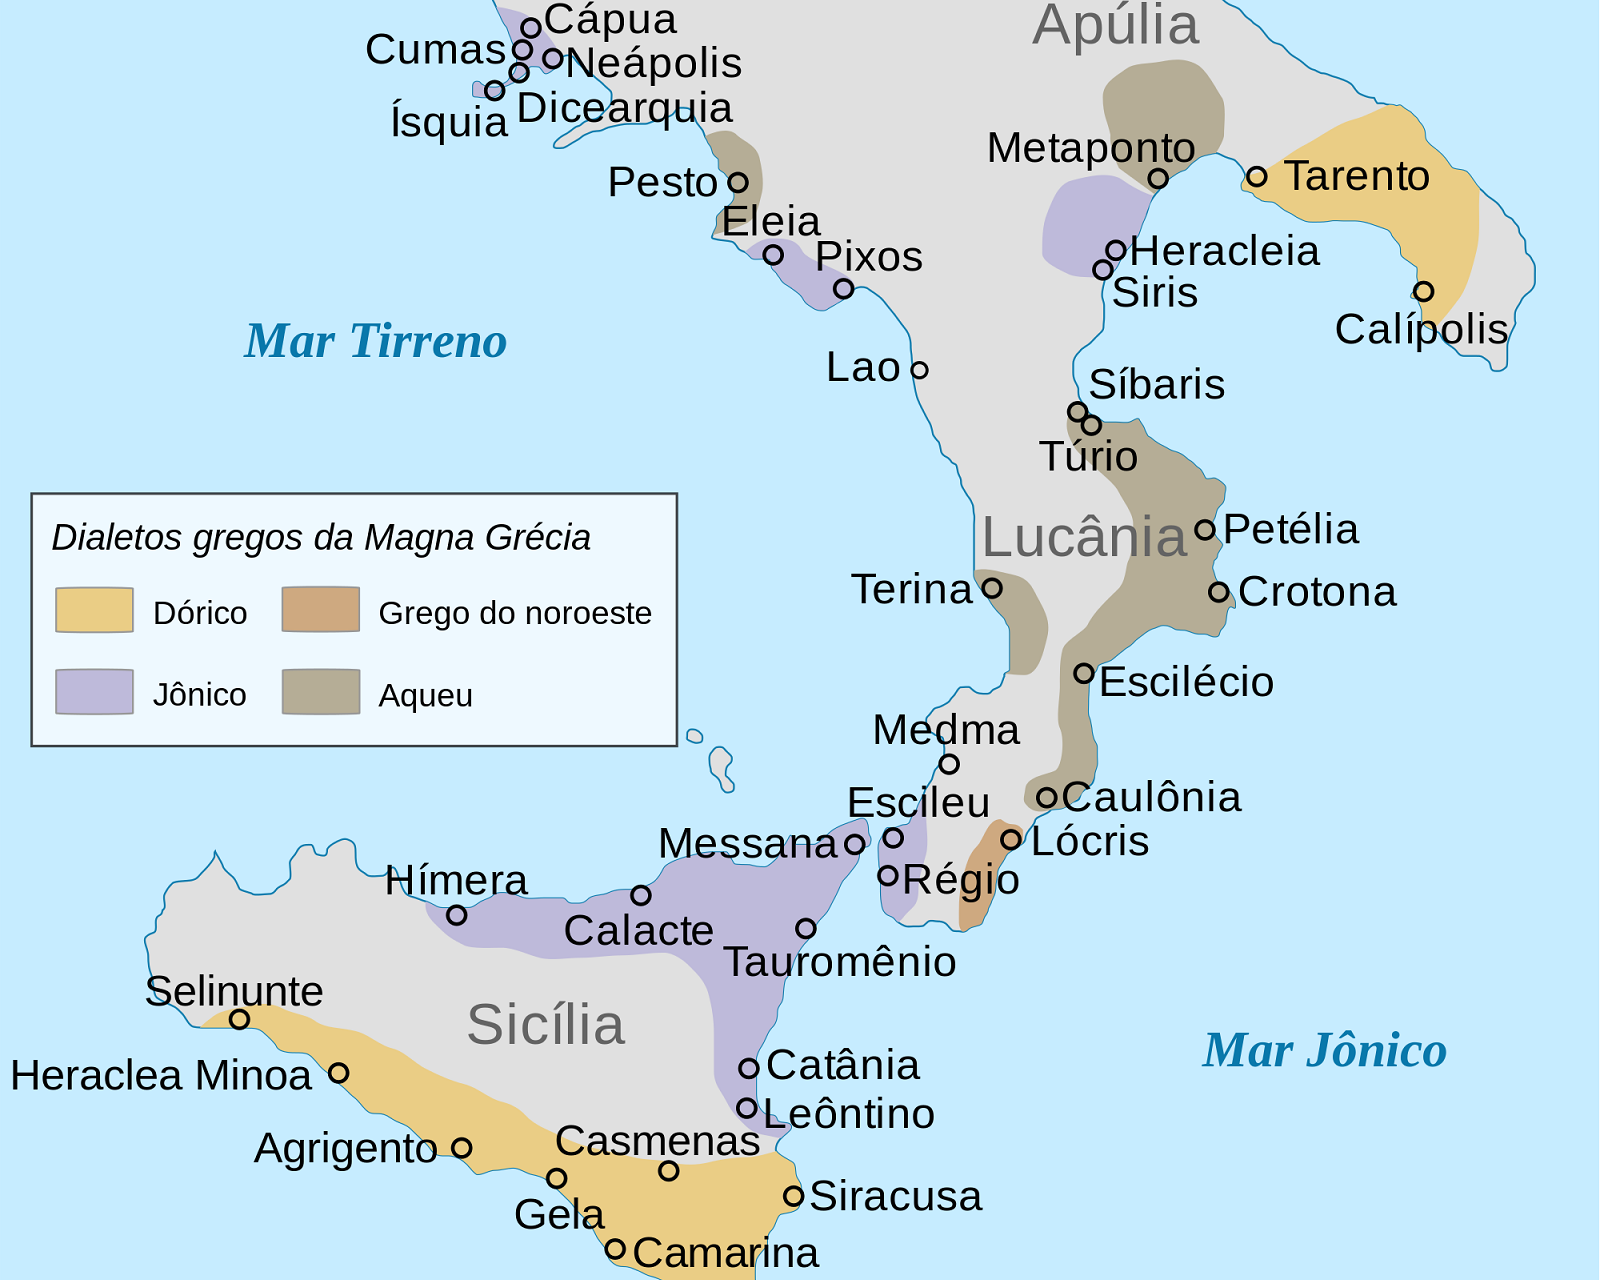 Греческие полисы Италии и Сицилии